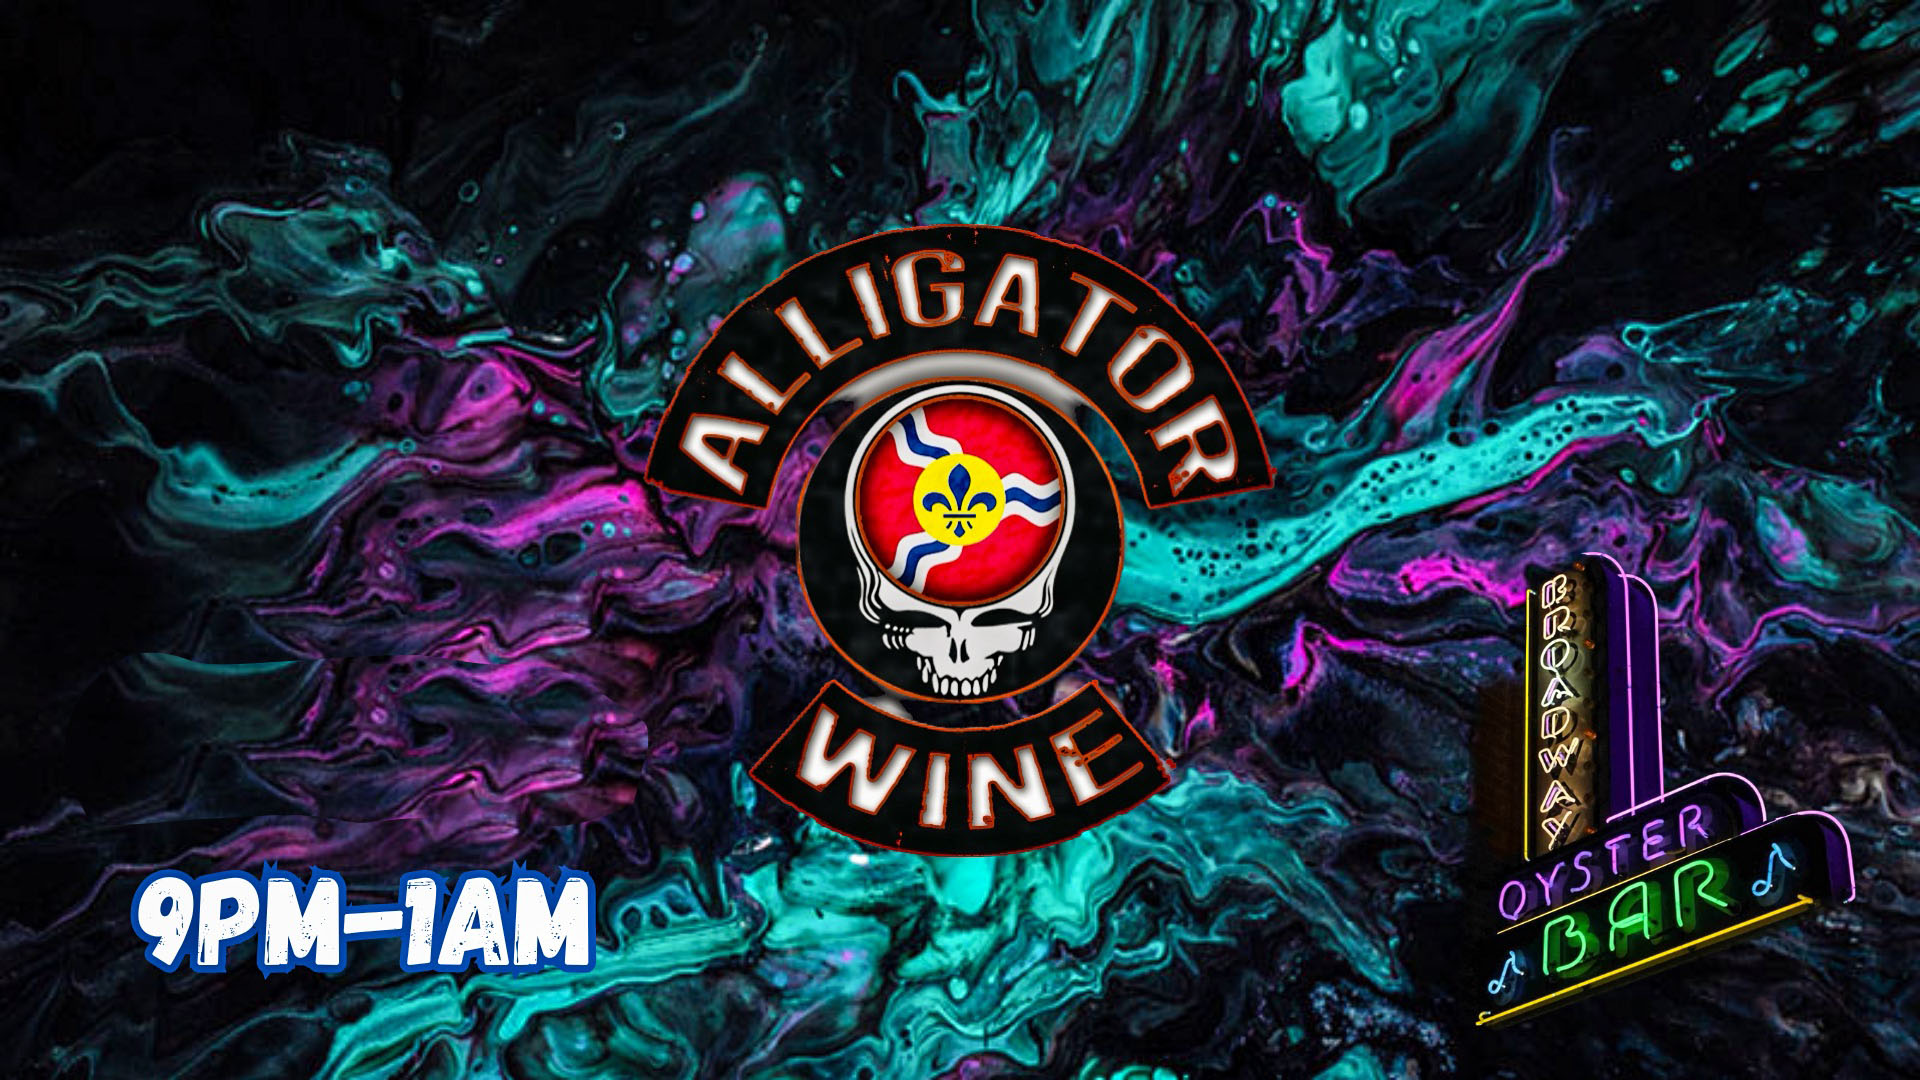 Broadway-Oyster-Bar Alligator Wine  image